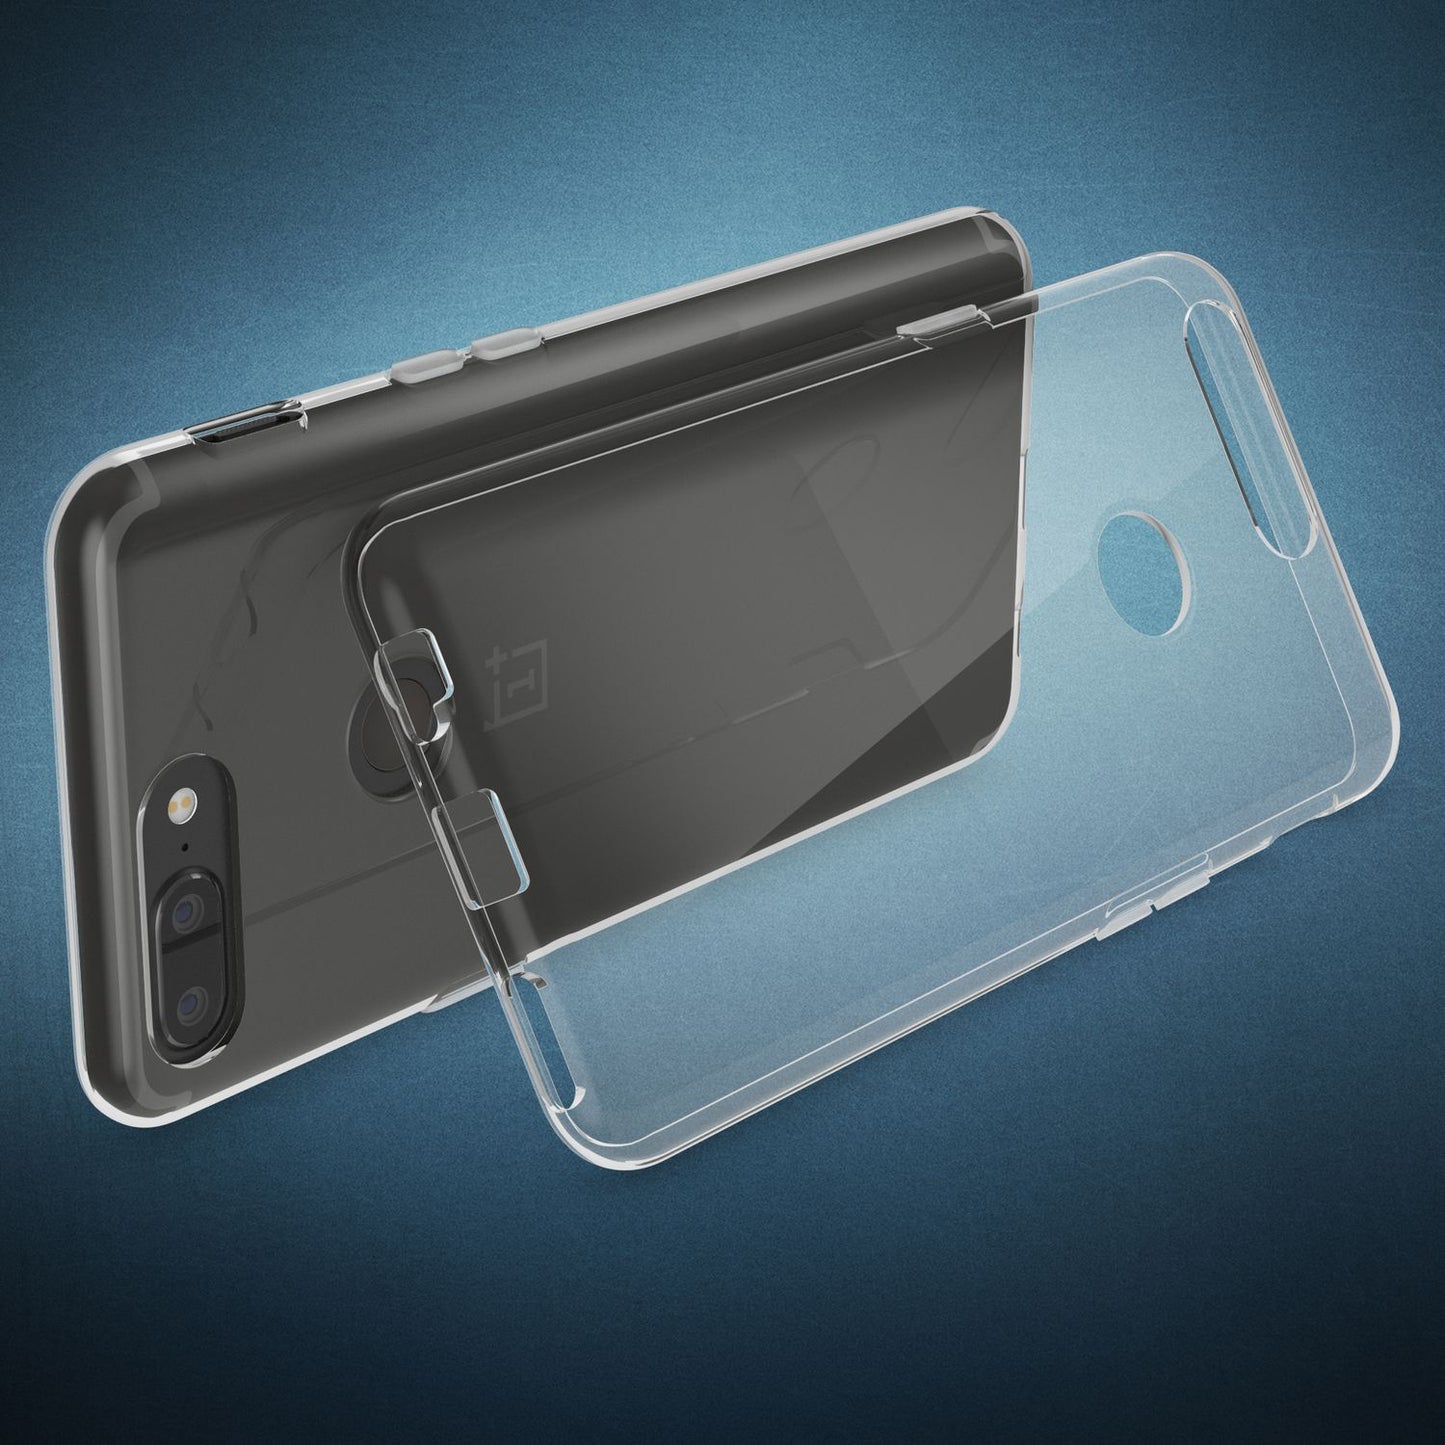 OnePlus 5T Handy Hülle von NALIA, Transparenter Silikon Case Cover Tasche Schutz